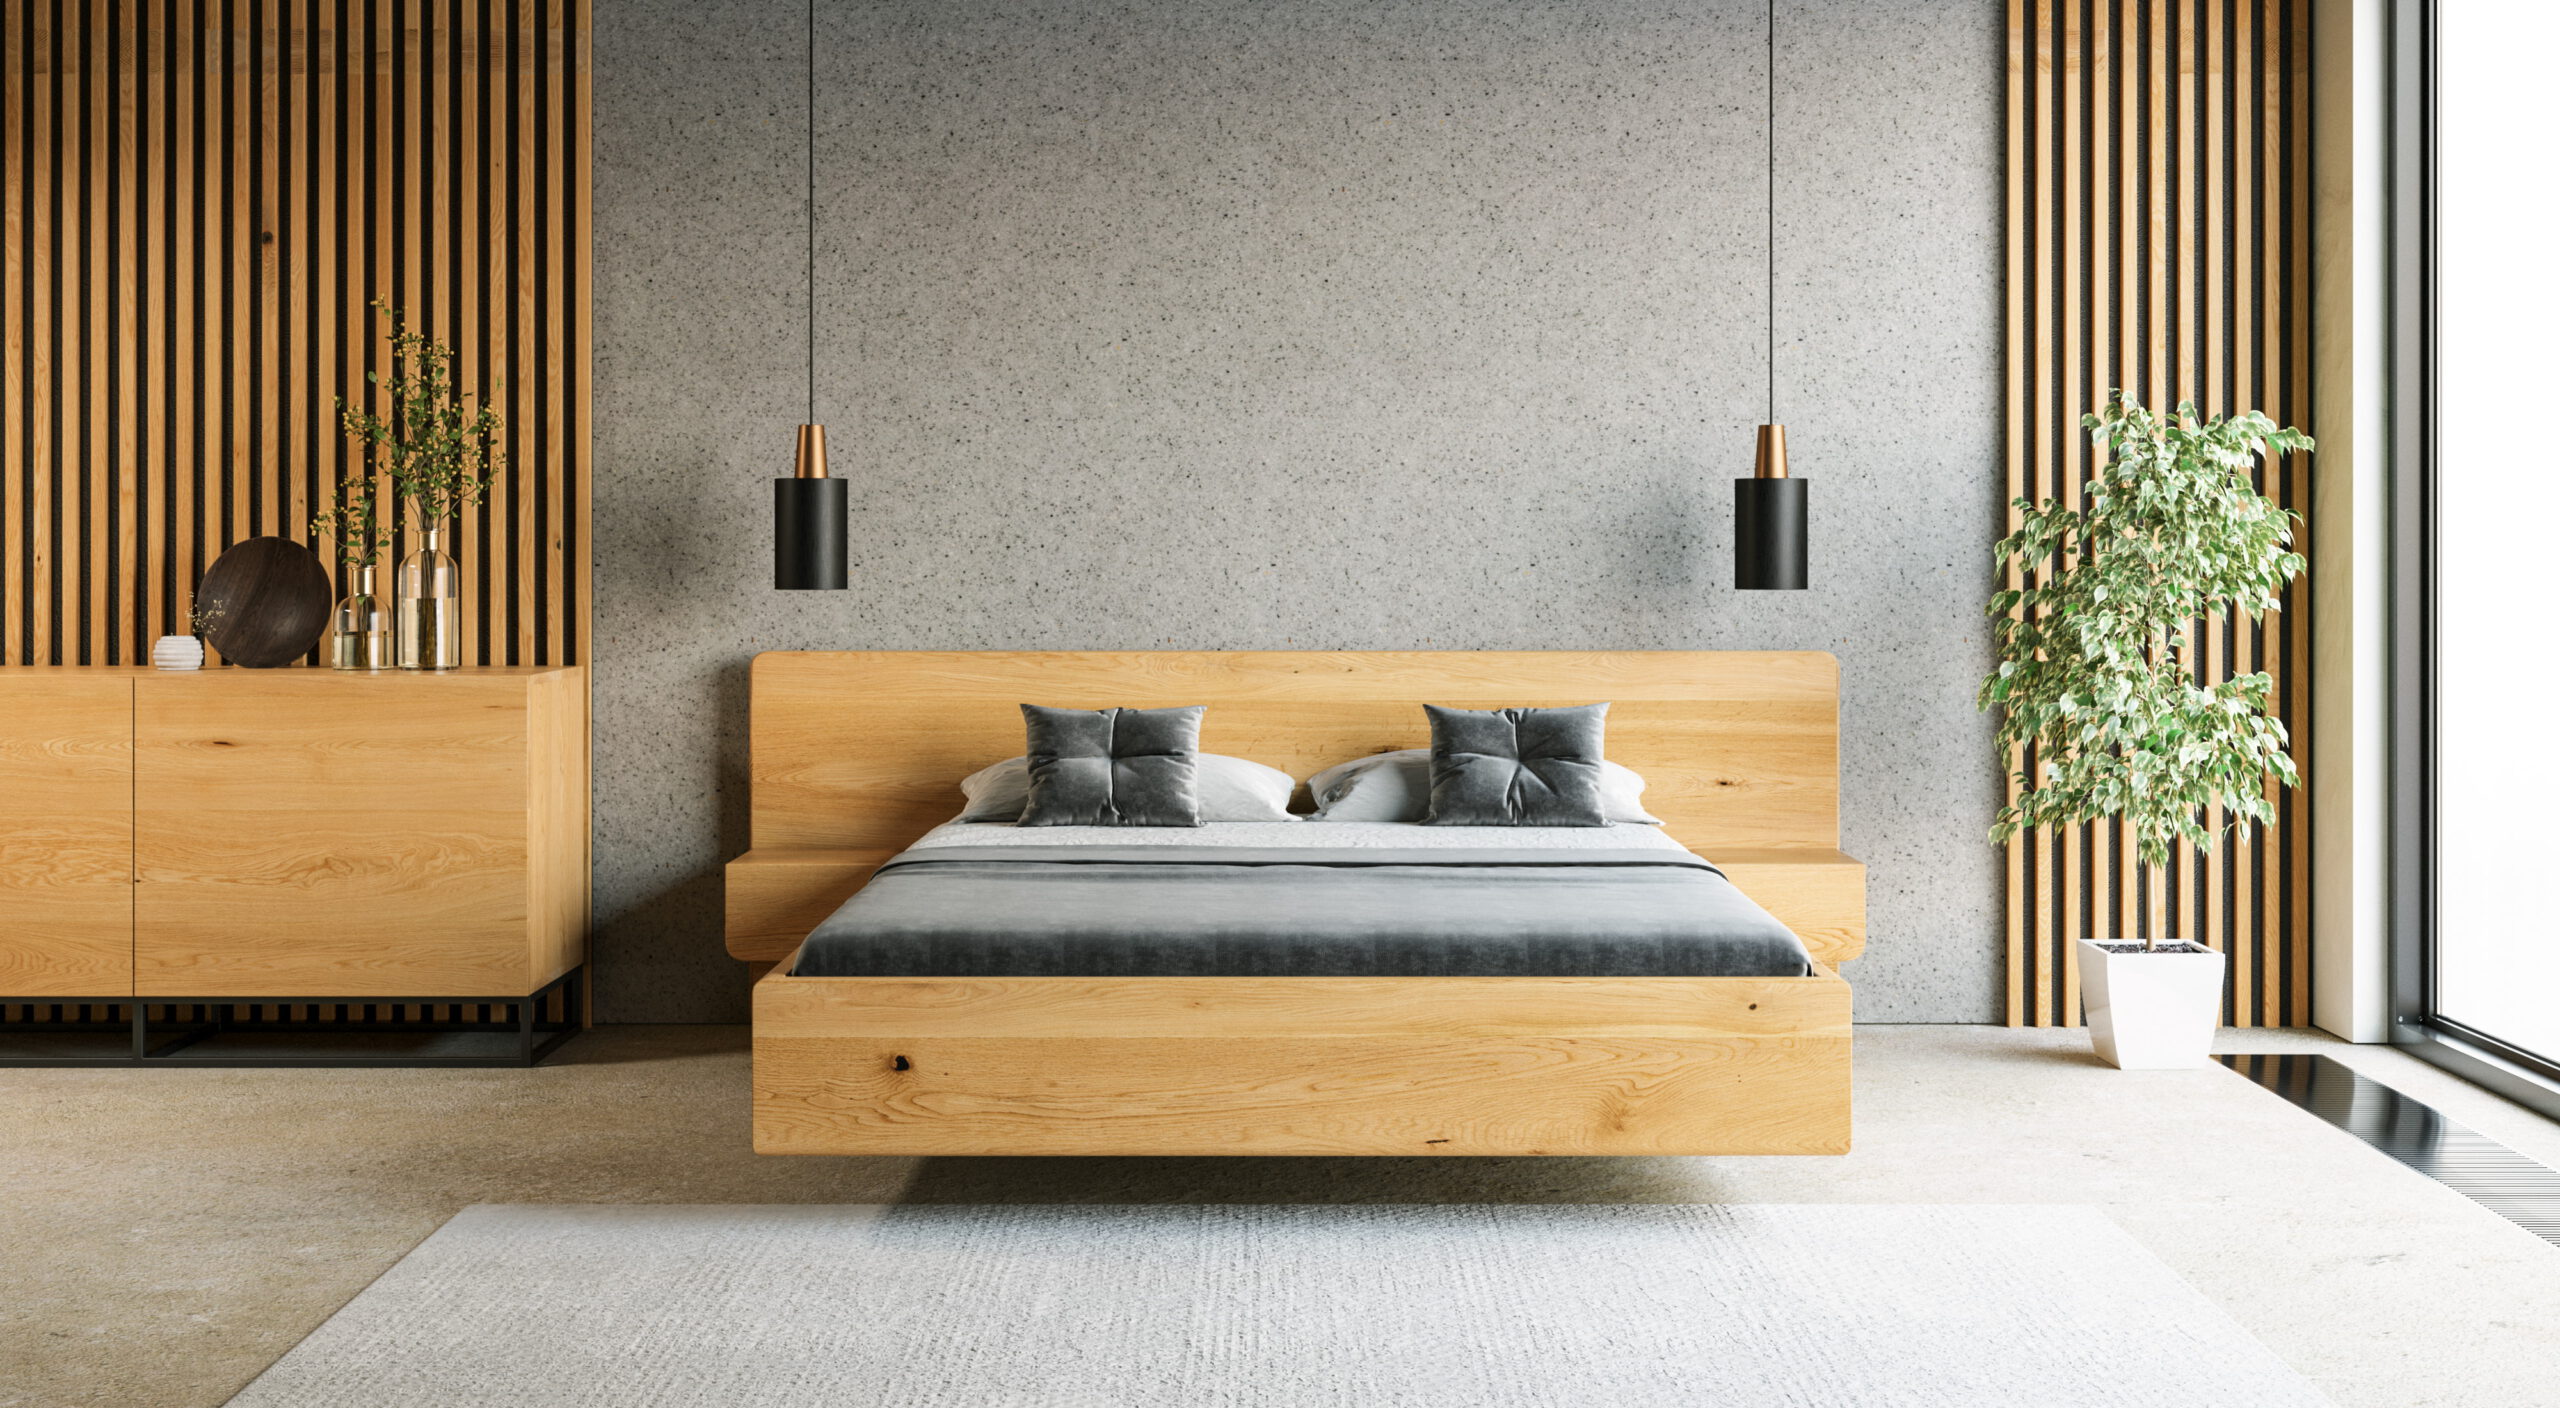 Łóżko lewitujące Wide z szafkami wykonane z litego drewna dębowego.